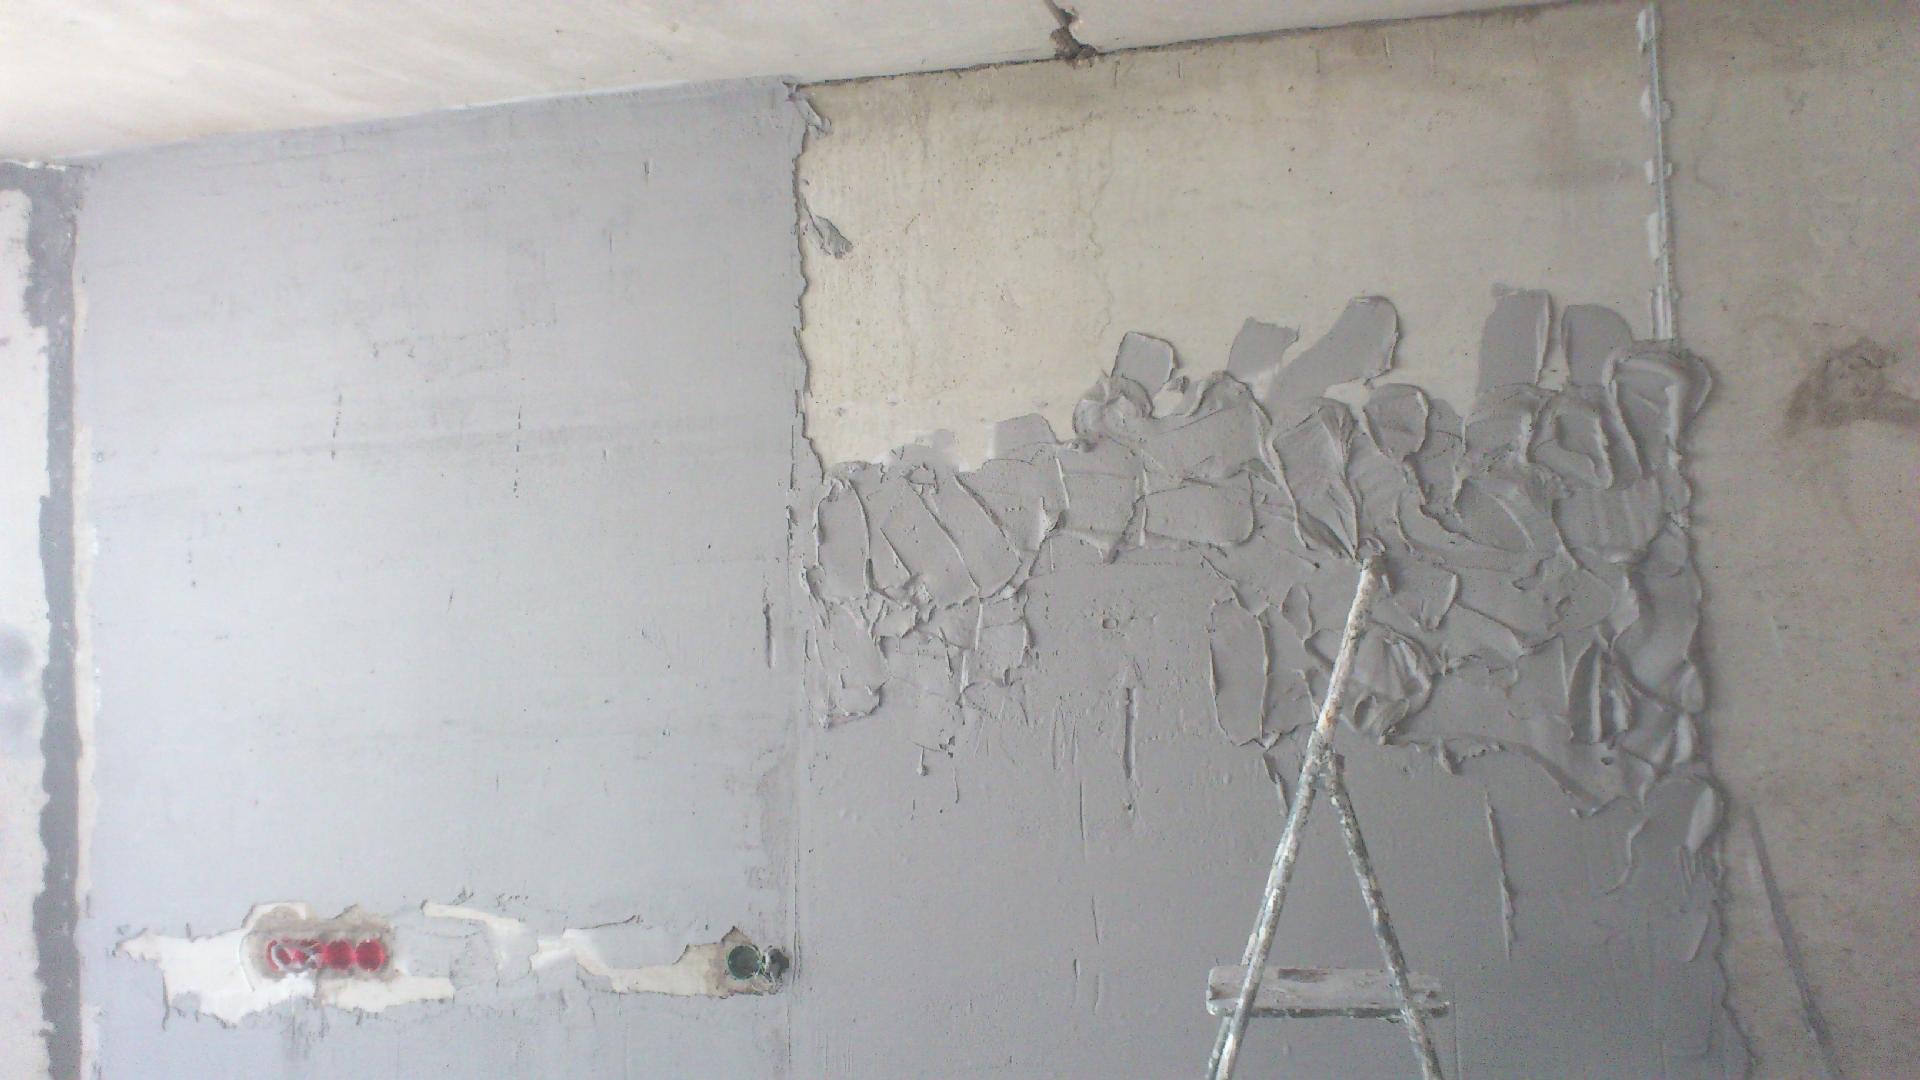 Выравнивание стен - пошаговая инструкция и советы по подбору материалов (110 фото)